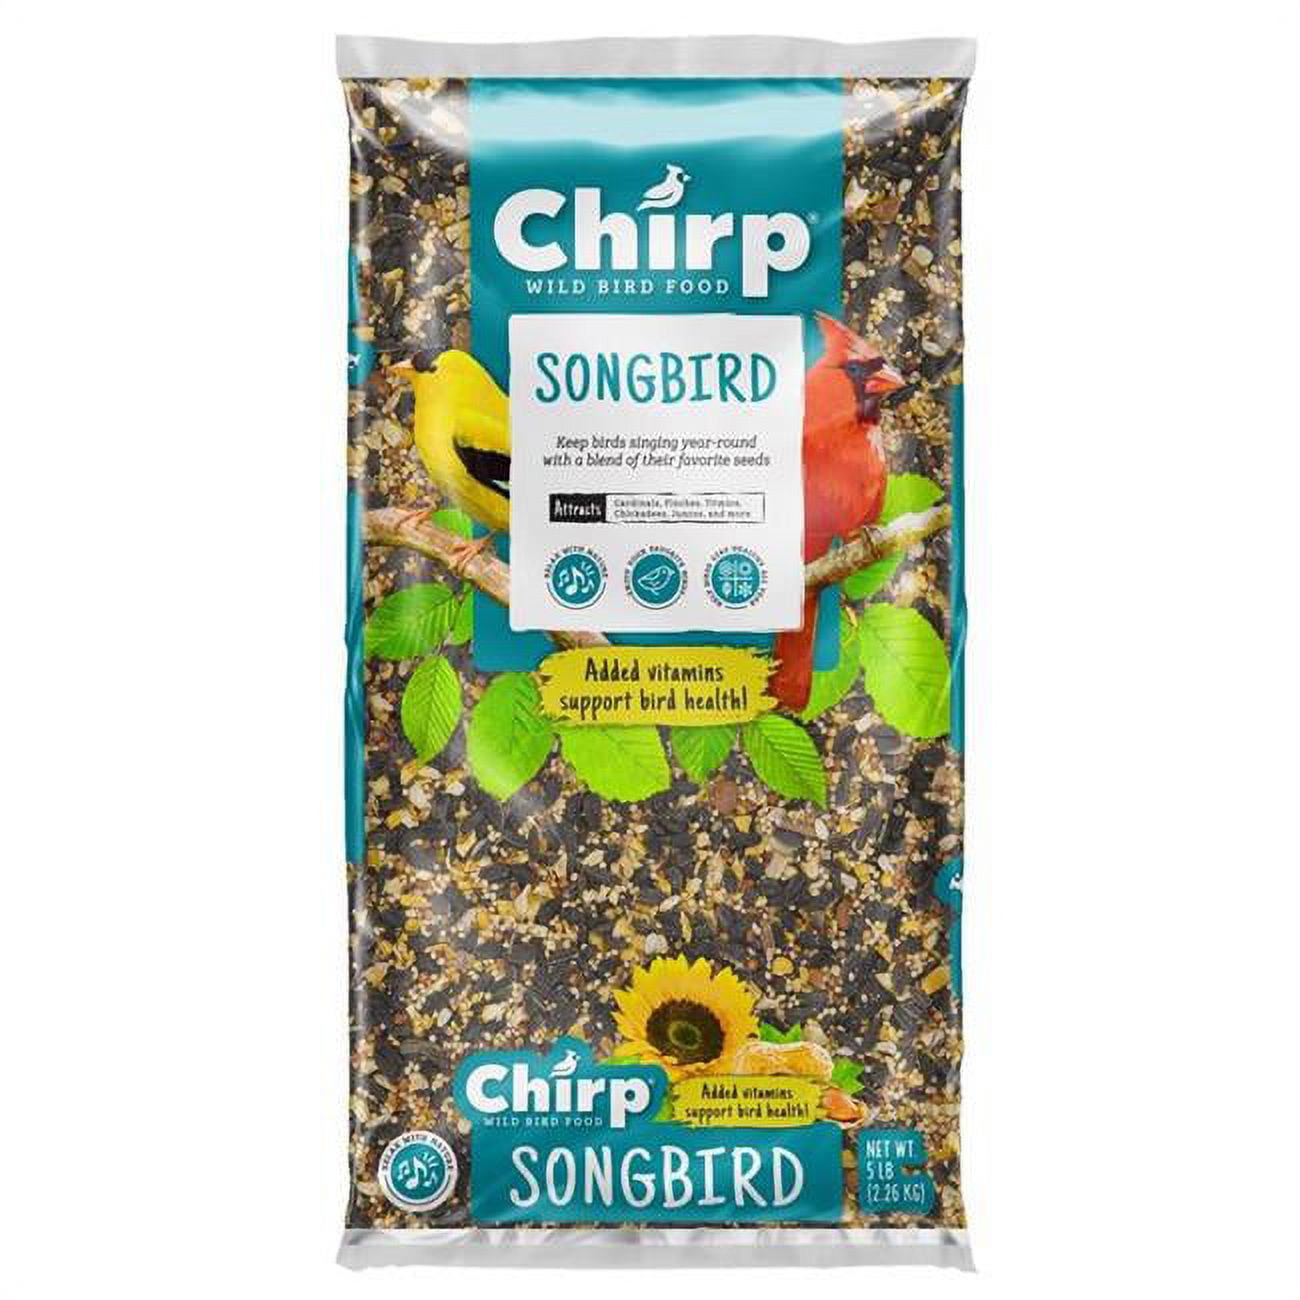 Picture of Chirp 9087761 5 lbs Songbird Wild Bird Black Oil Sunflower Wild Bird Food